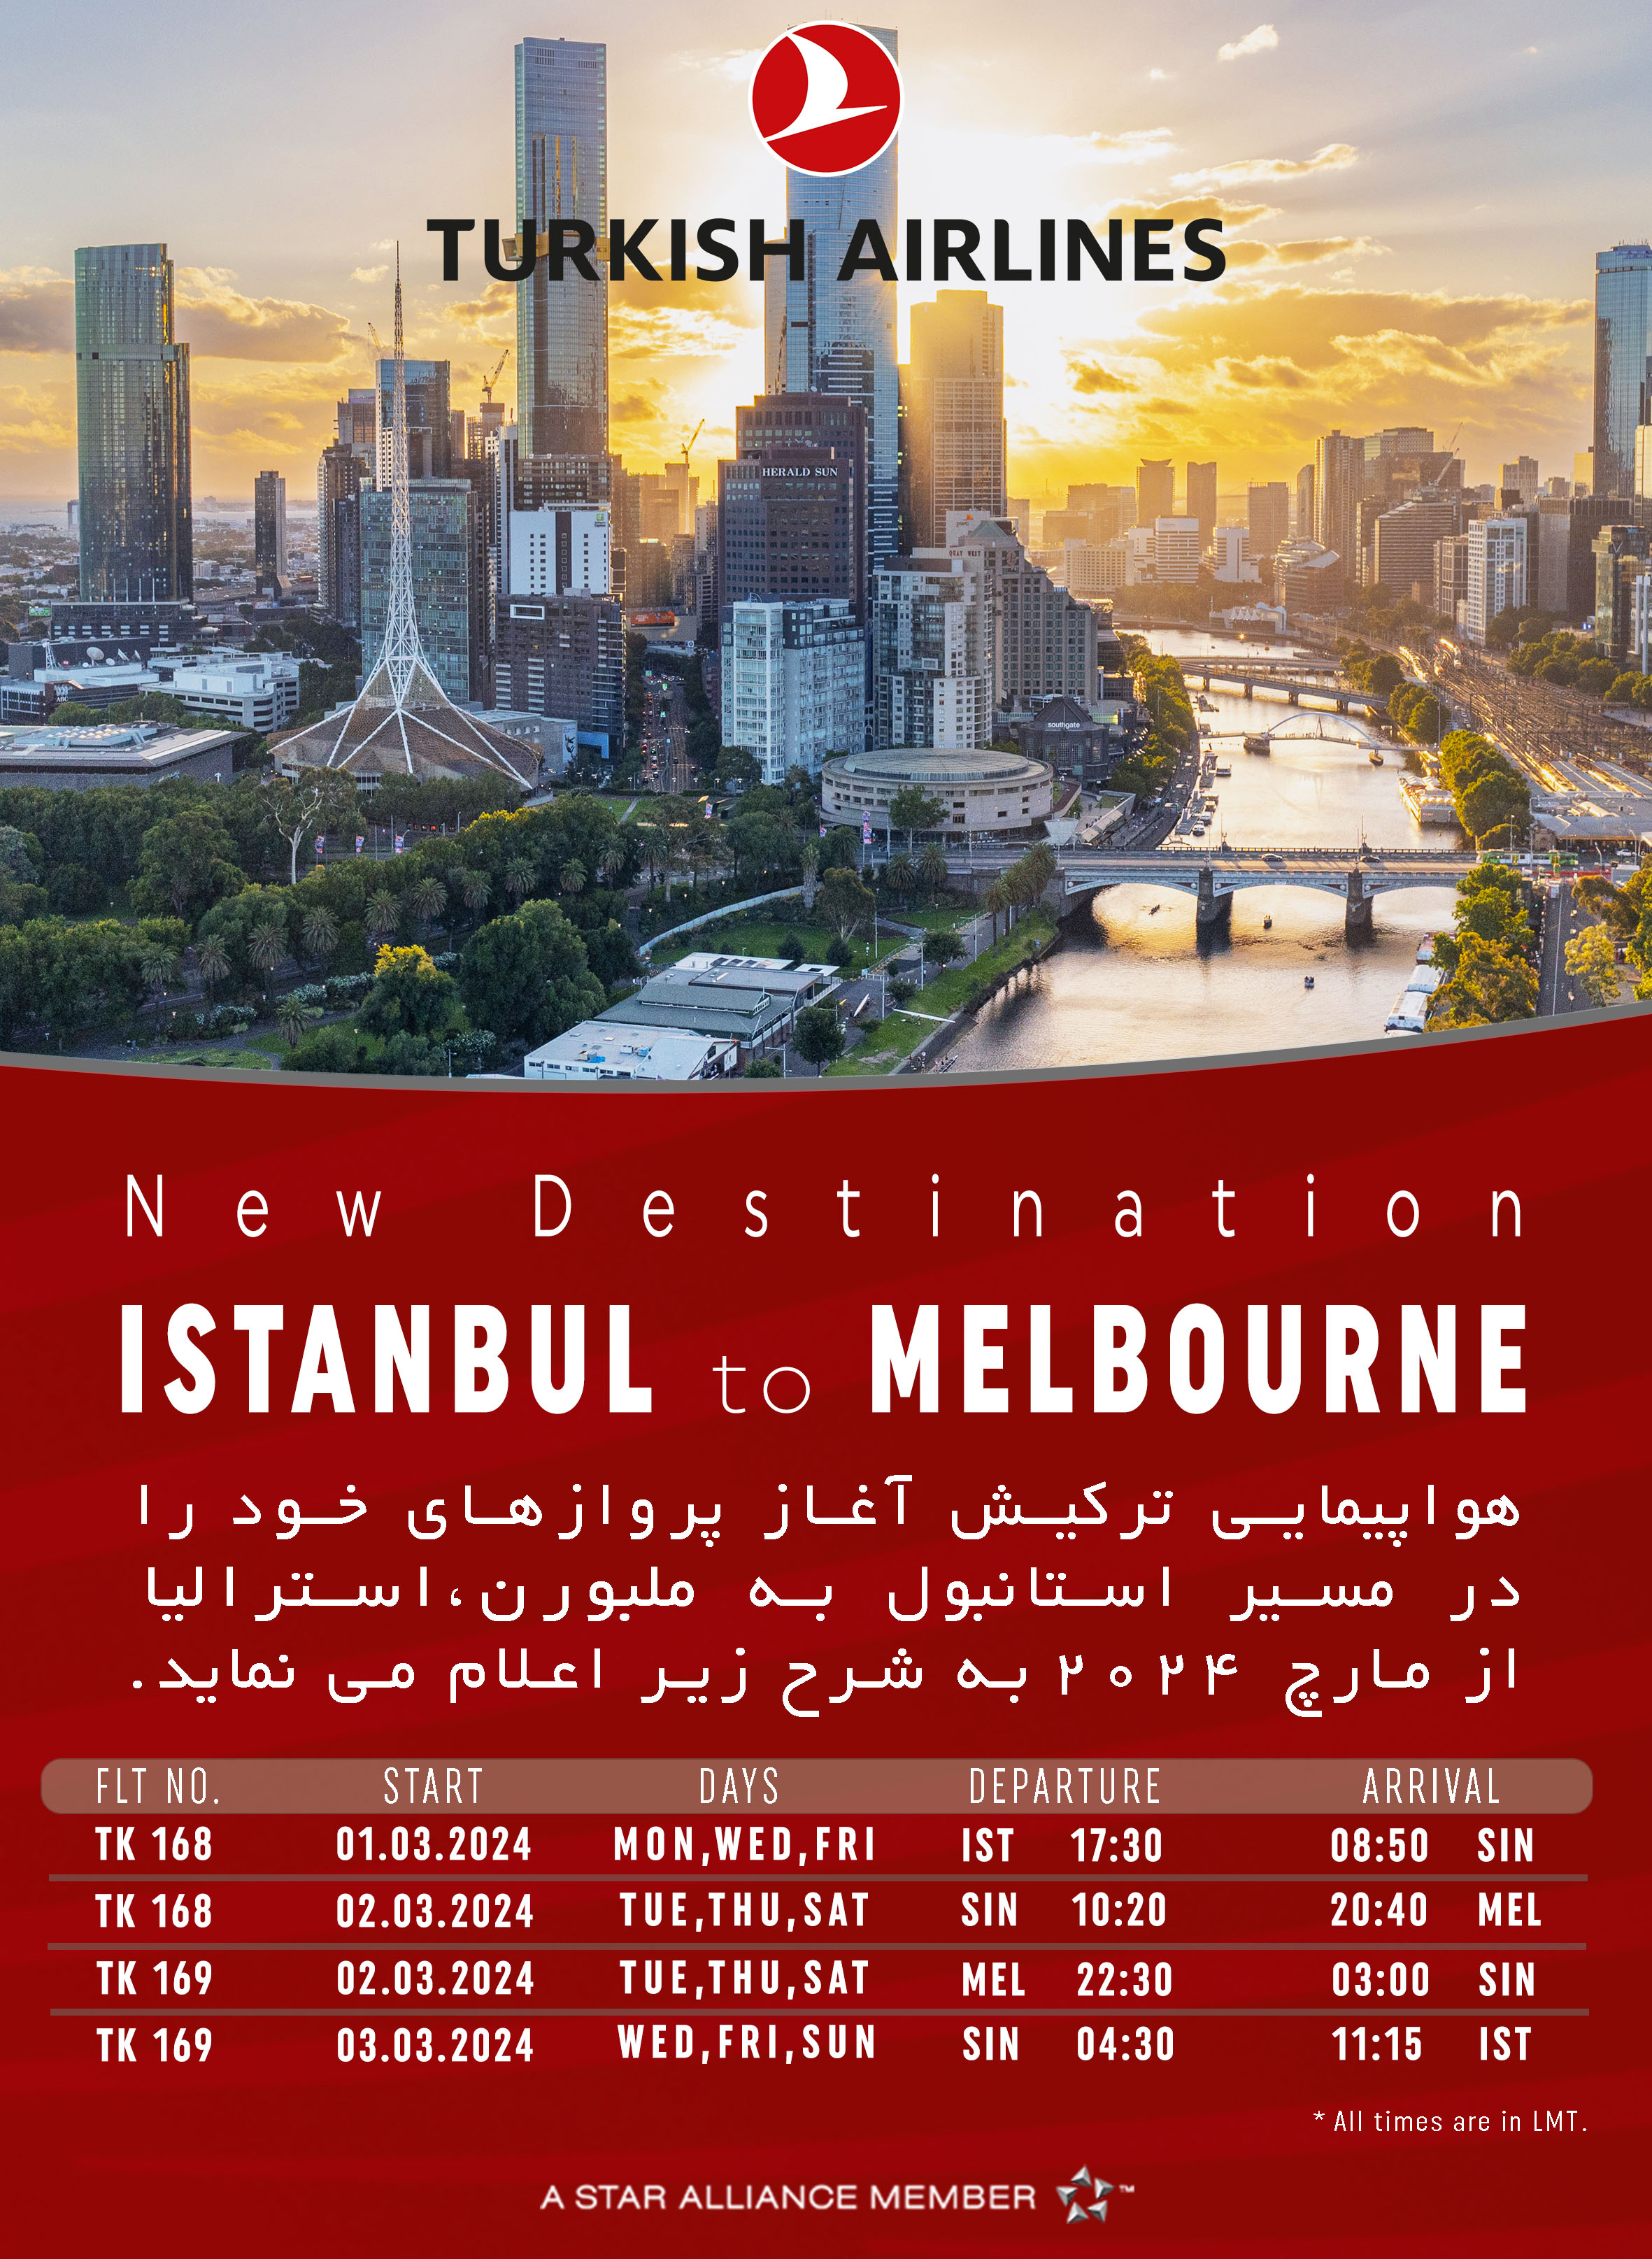 بخشنامه و اطلاعیه   هواپیمایی ترکیش درباره شروع پرواز در مسیر استانبول به ملبورن،استرالیا از مارچ 2024